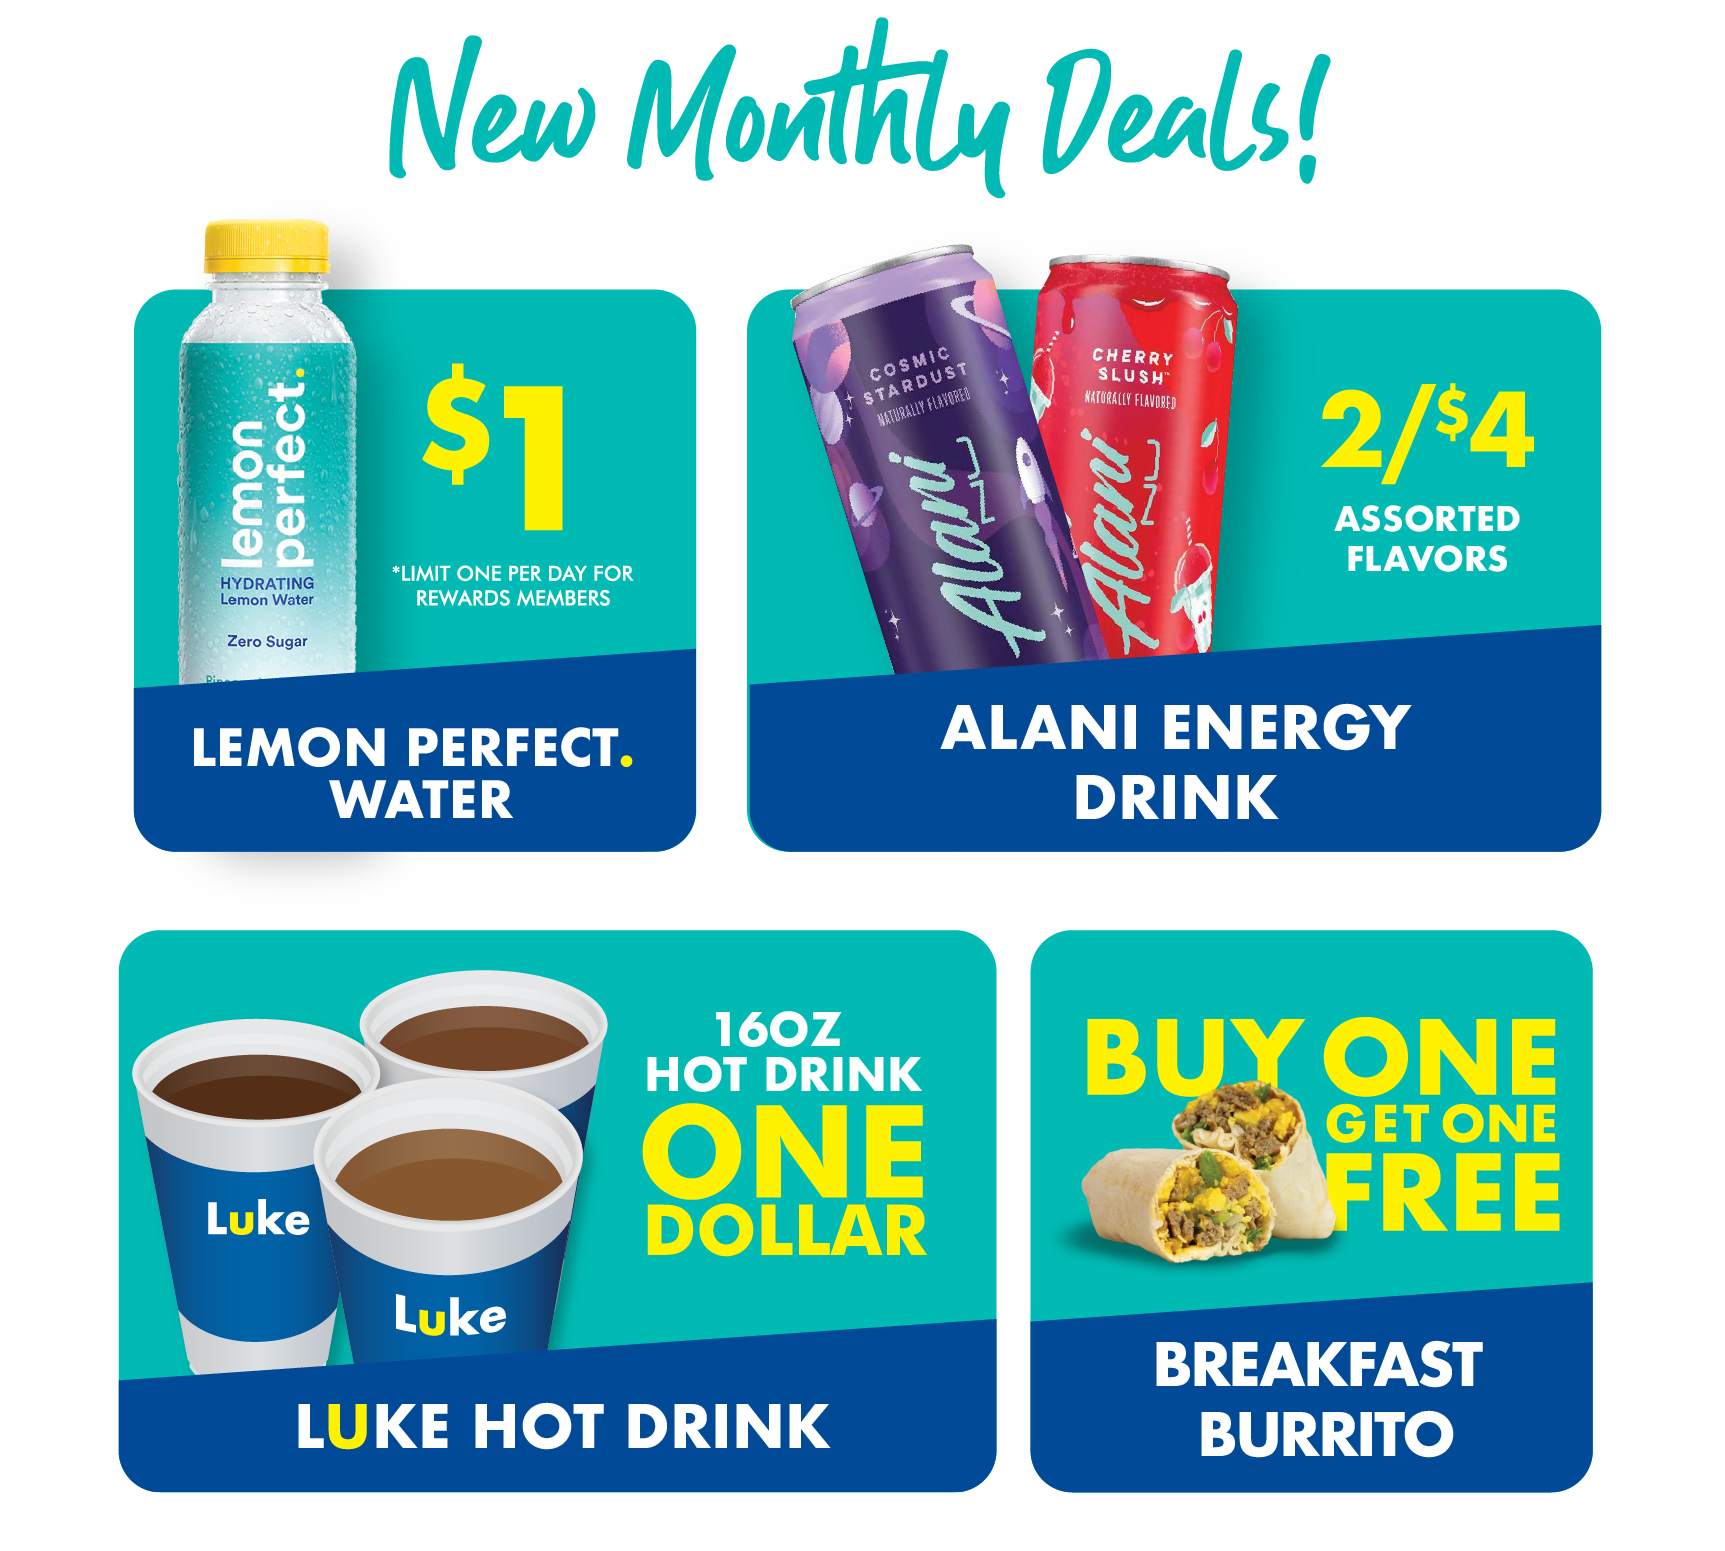 New Monthly Deals!